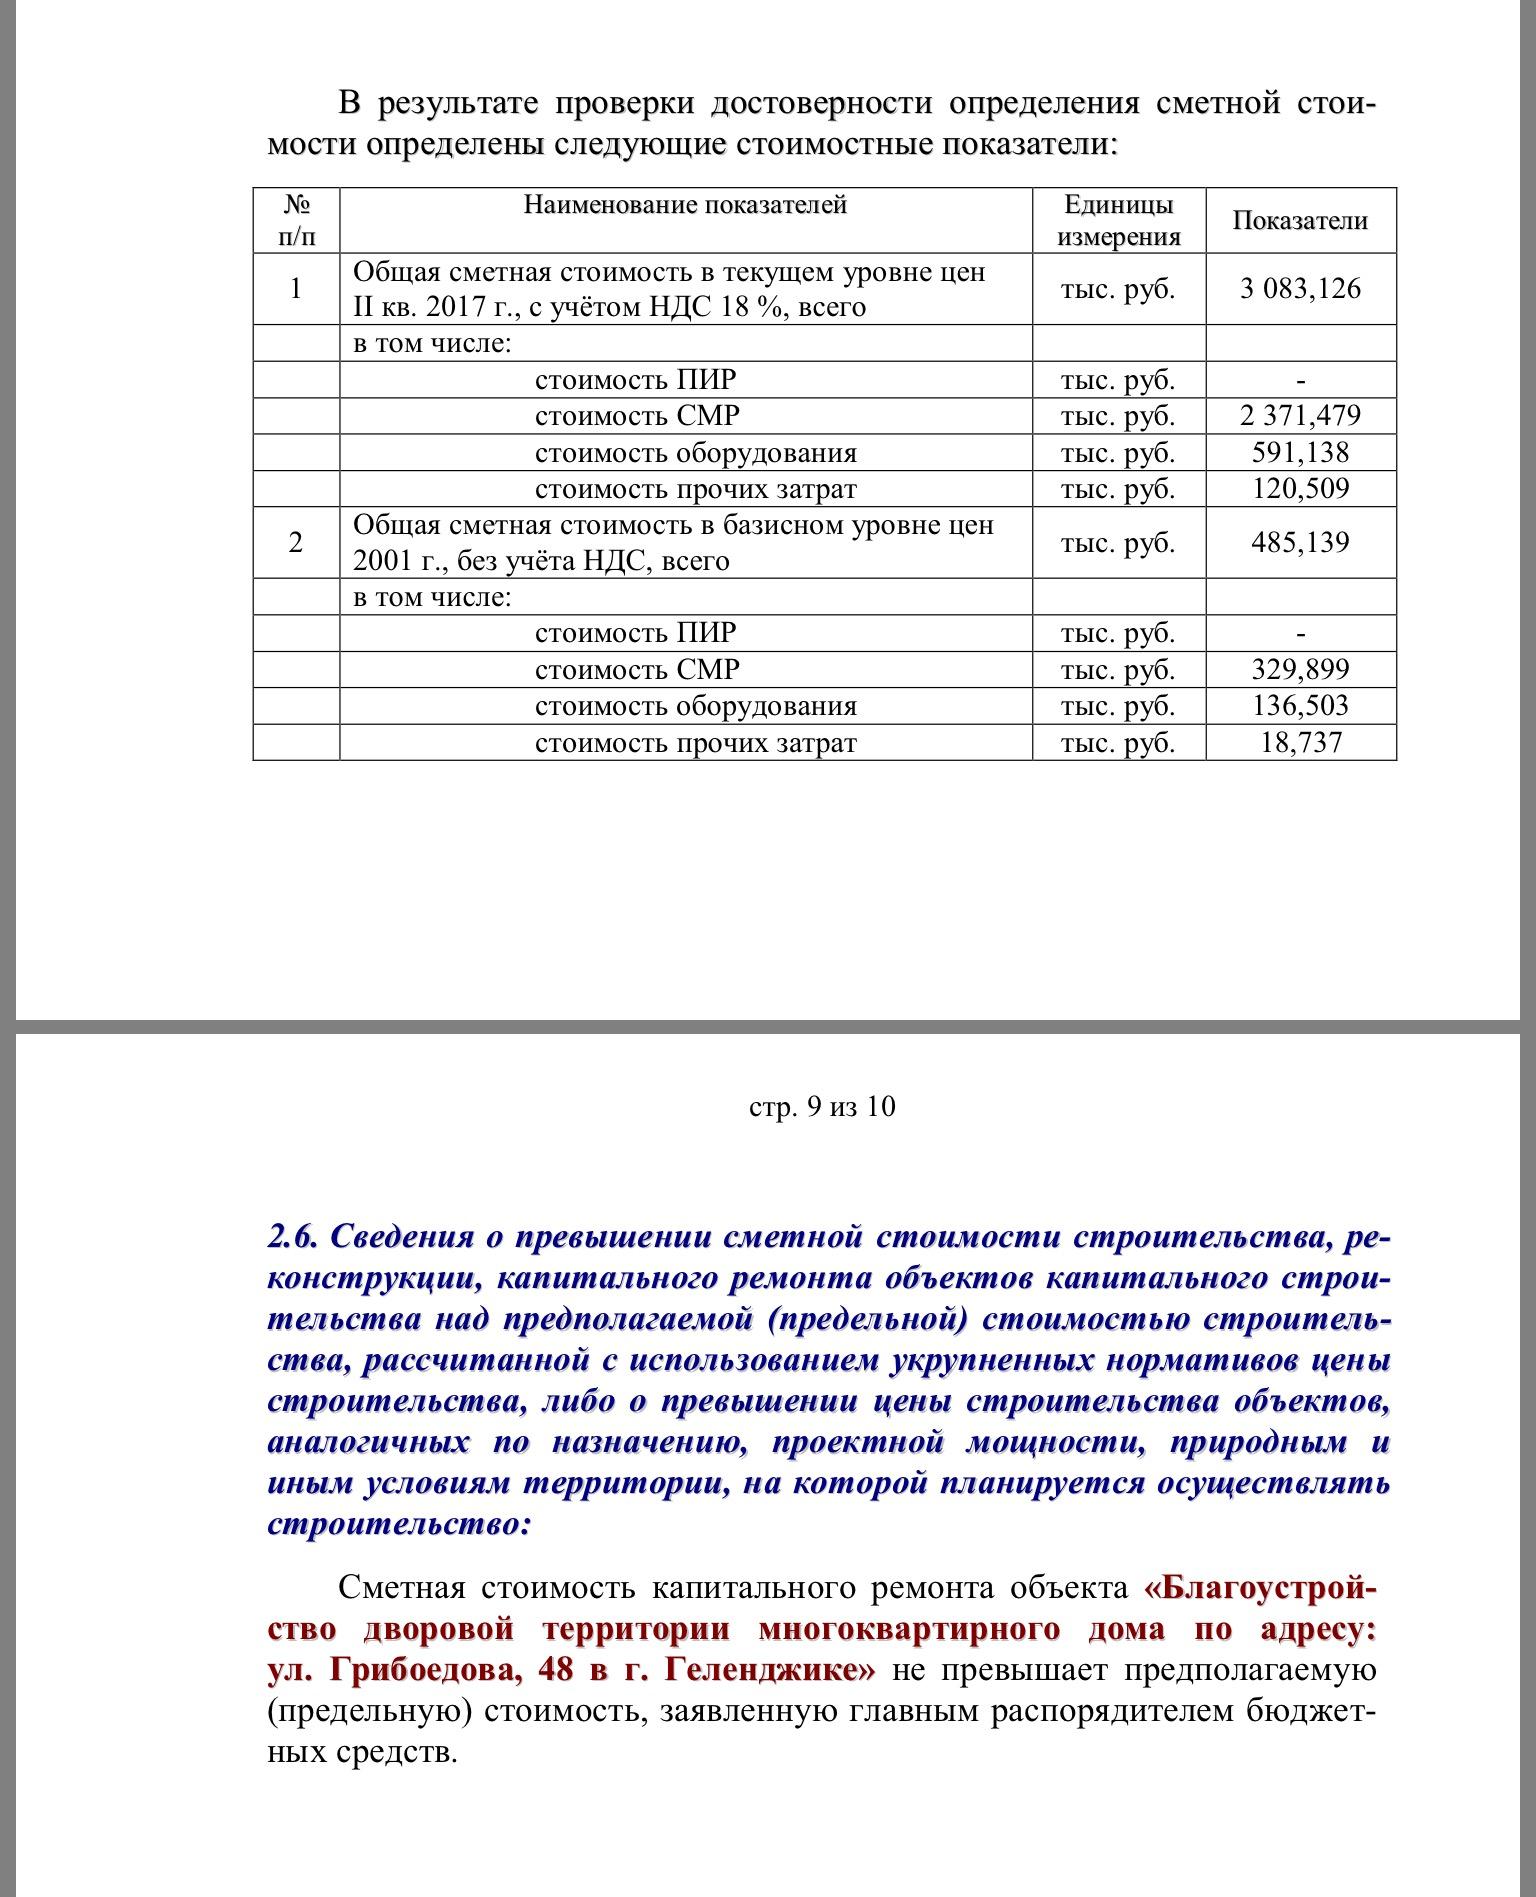 Экспертиза благоустройства придомовой территории Грибоедова 48 лист 3